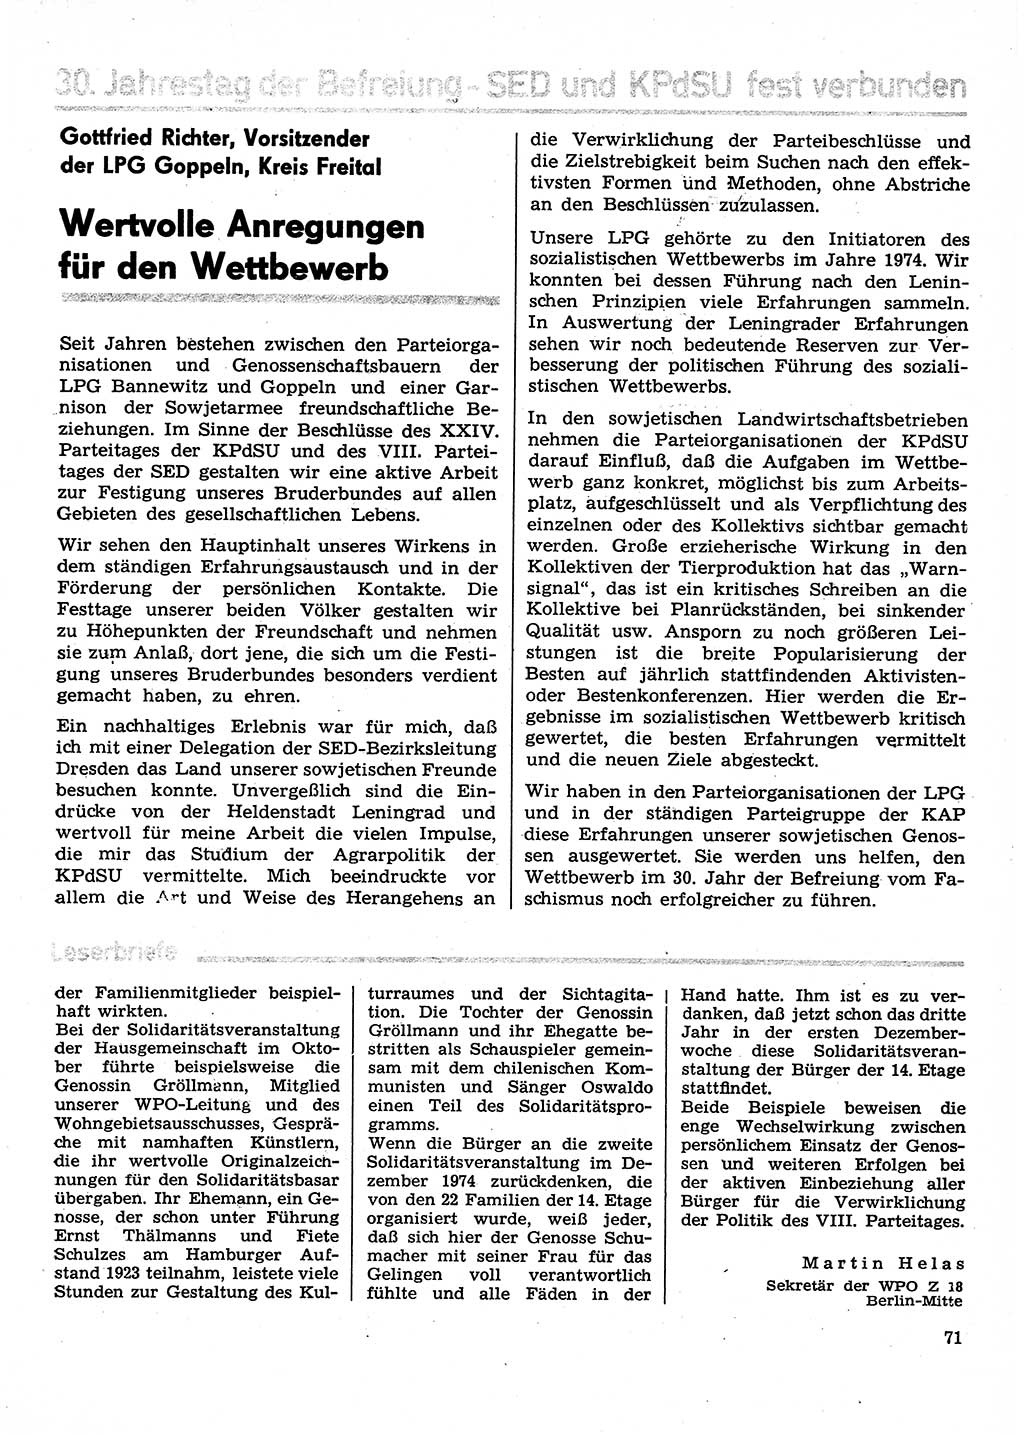 Neuer Weg (NW), Organ des Zentralkomitees (ZK) der SED (Sozialistische Einheitspartei Deutschlands) für Fragen des Parteilebens, 30. Jahrgang [Deutsche Demokratische Republik (DDR)] 1975, Seite 71 (NW ZK SED DDR 1975, S. 71)